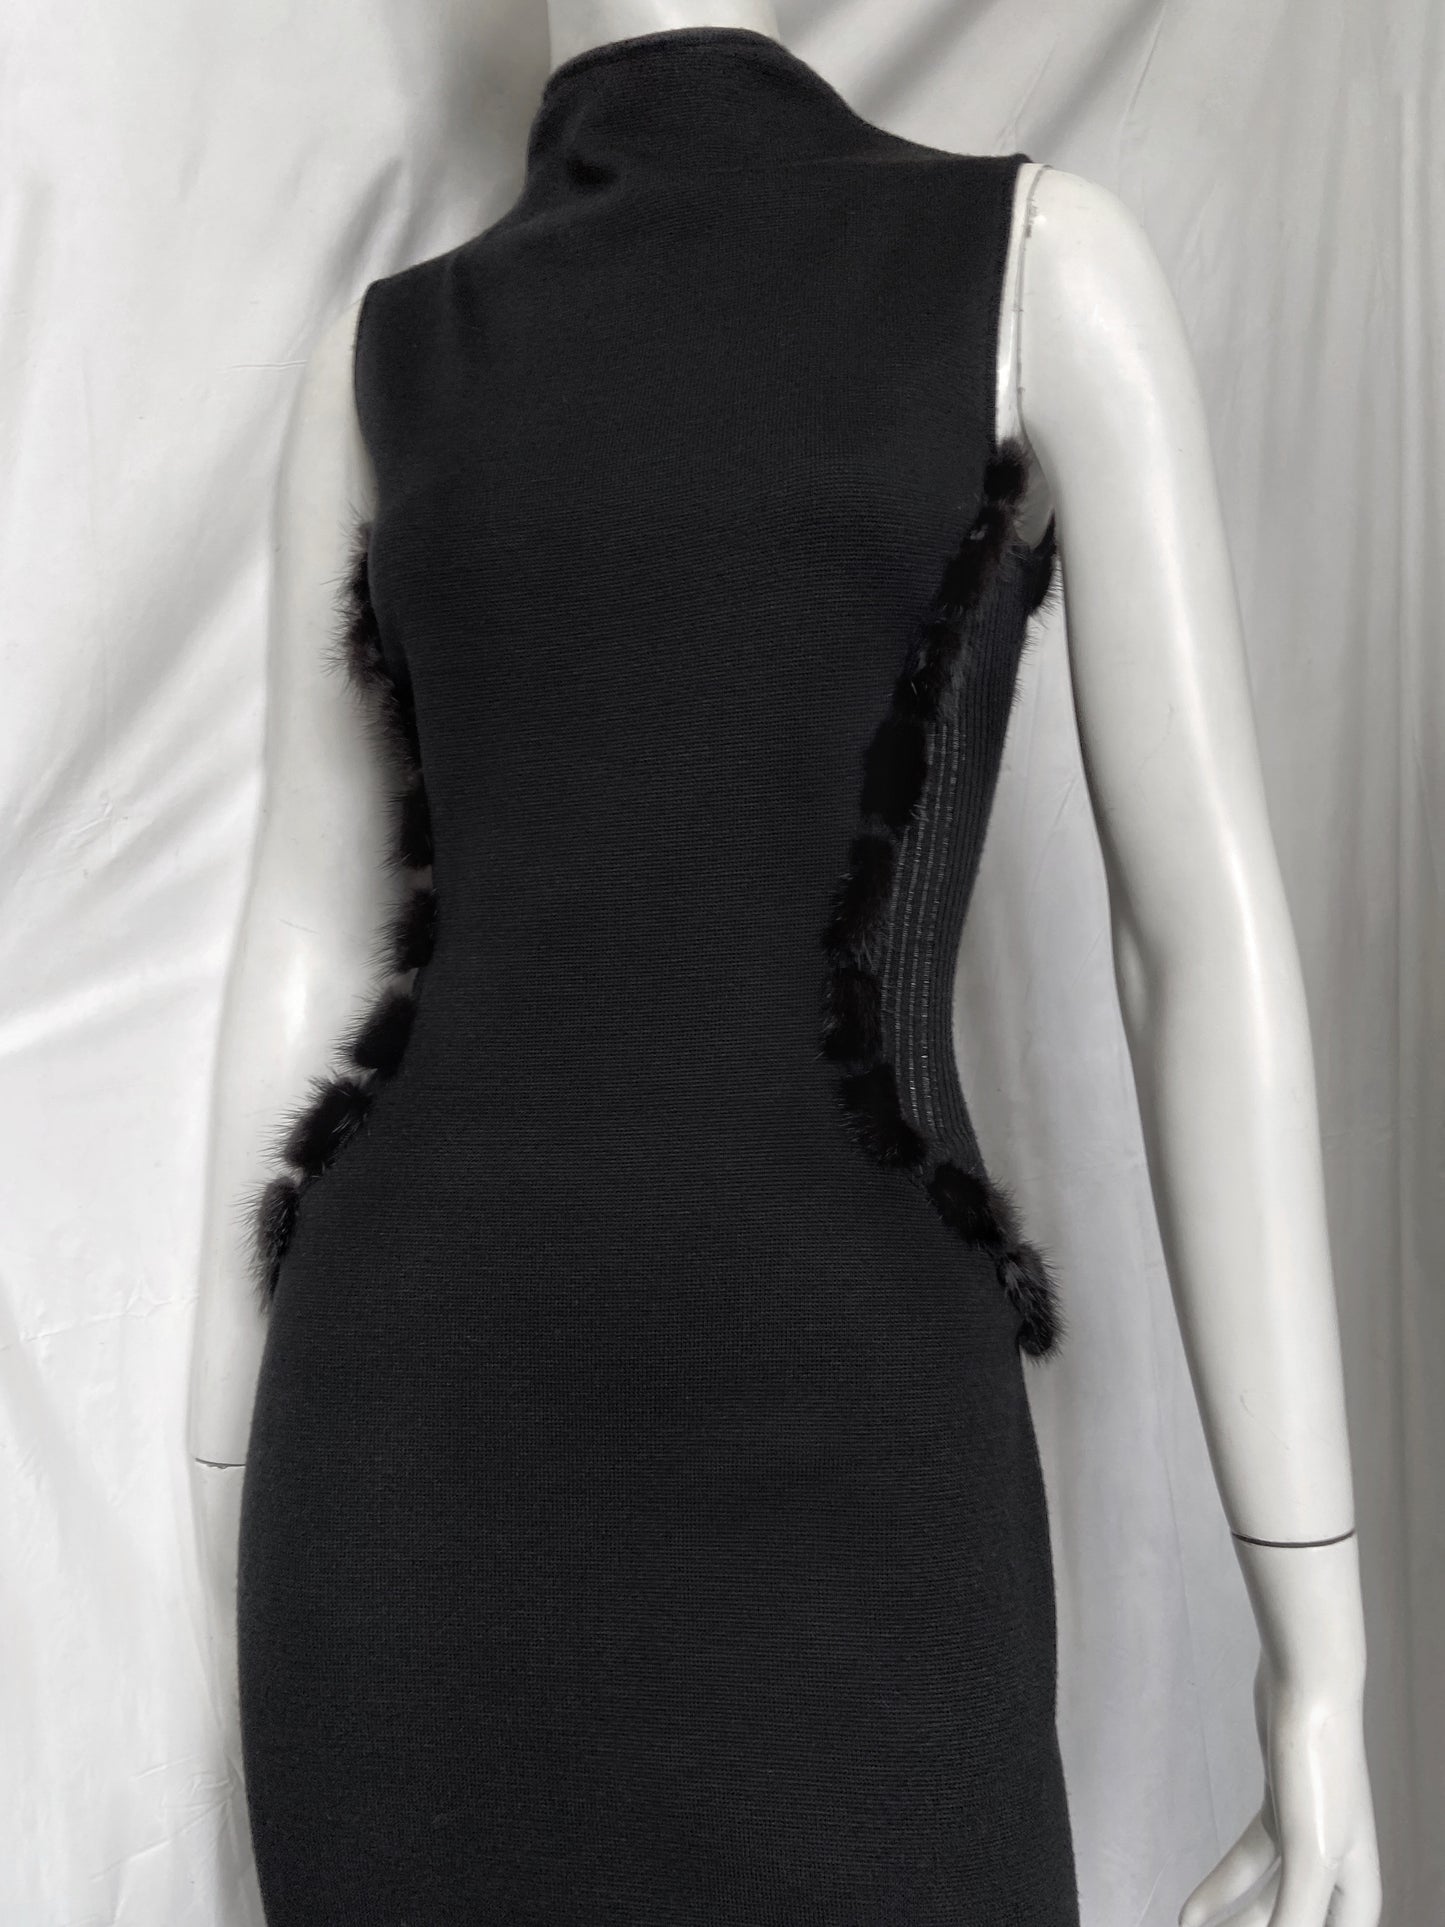 Gianni Versace Fall 1999 Donatella Mink Fur Trim Wool Stretch Dress 38